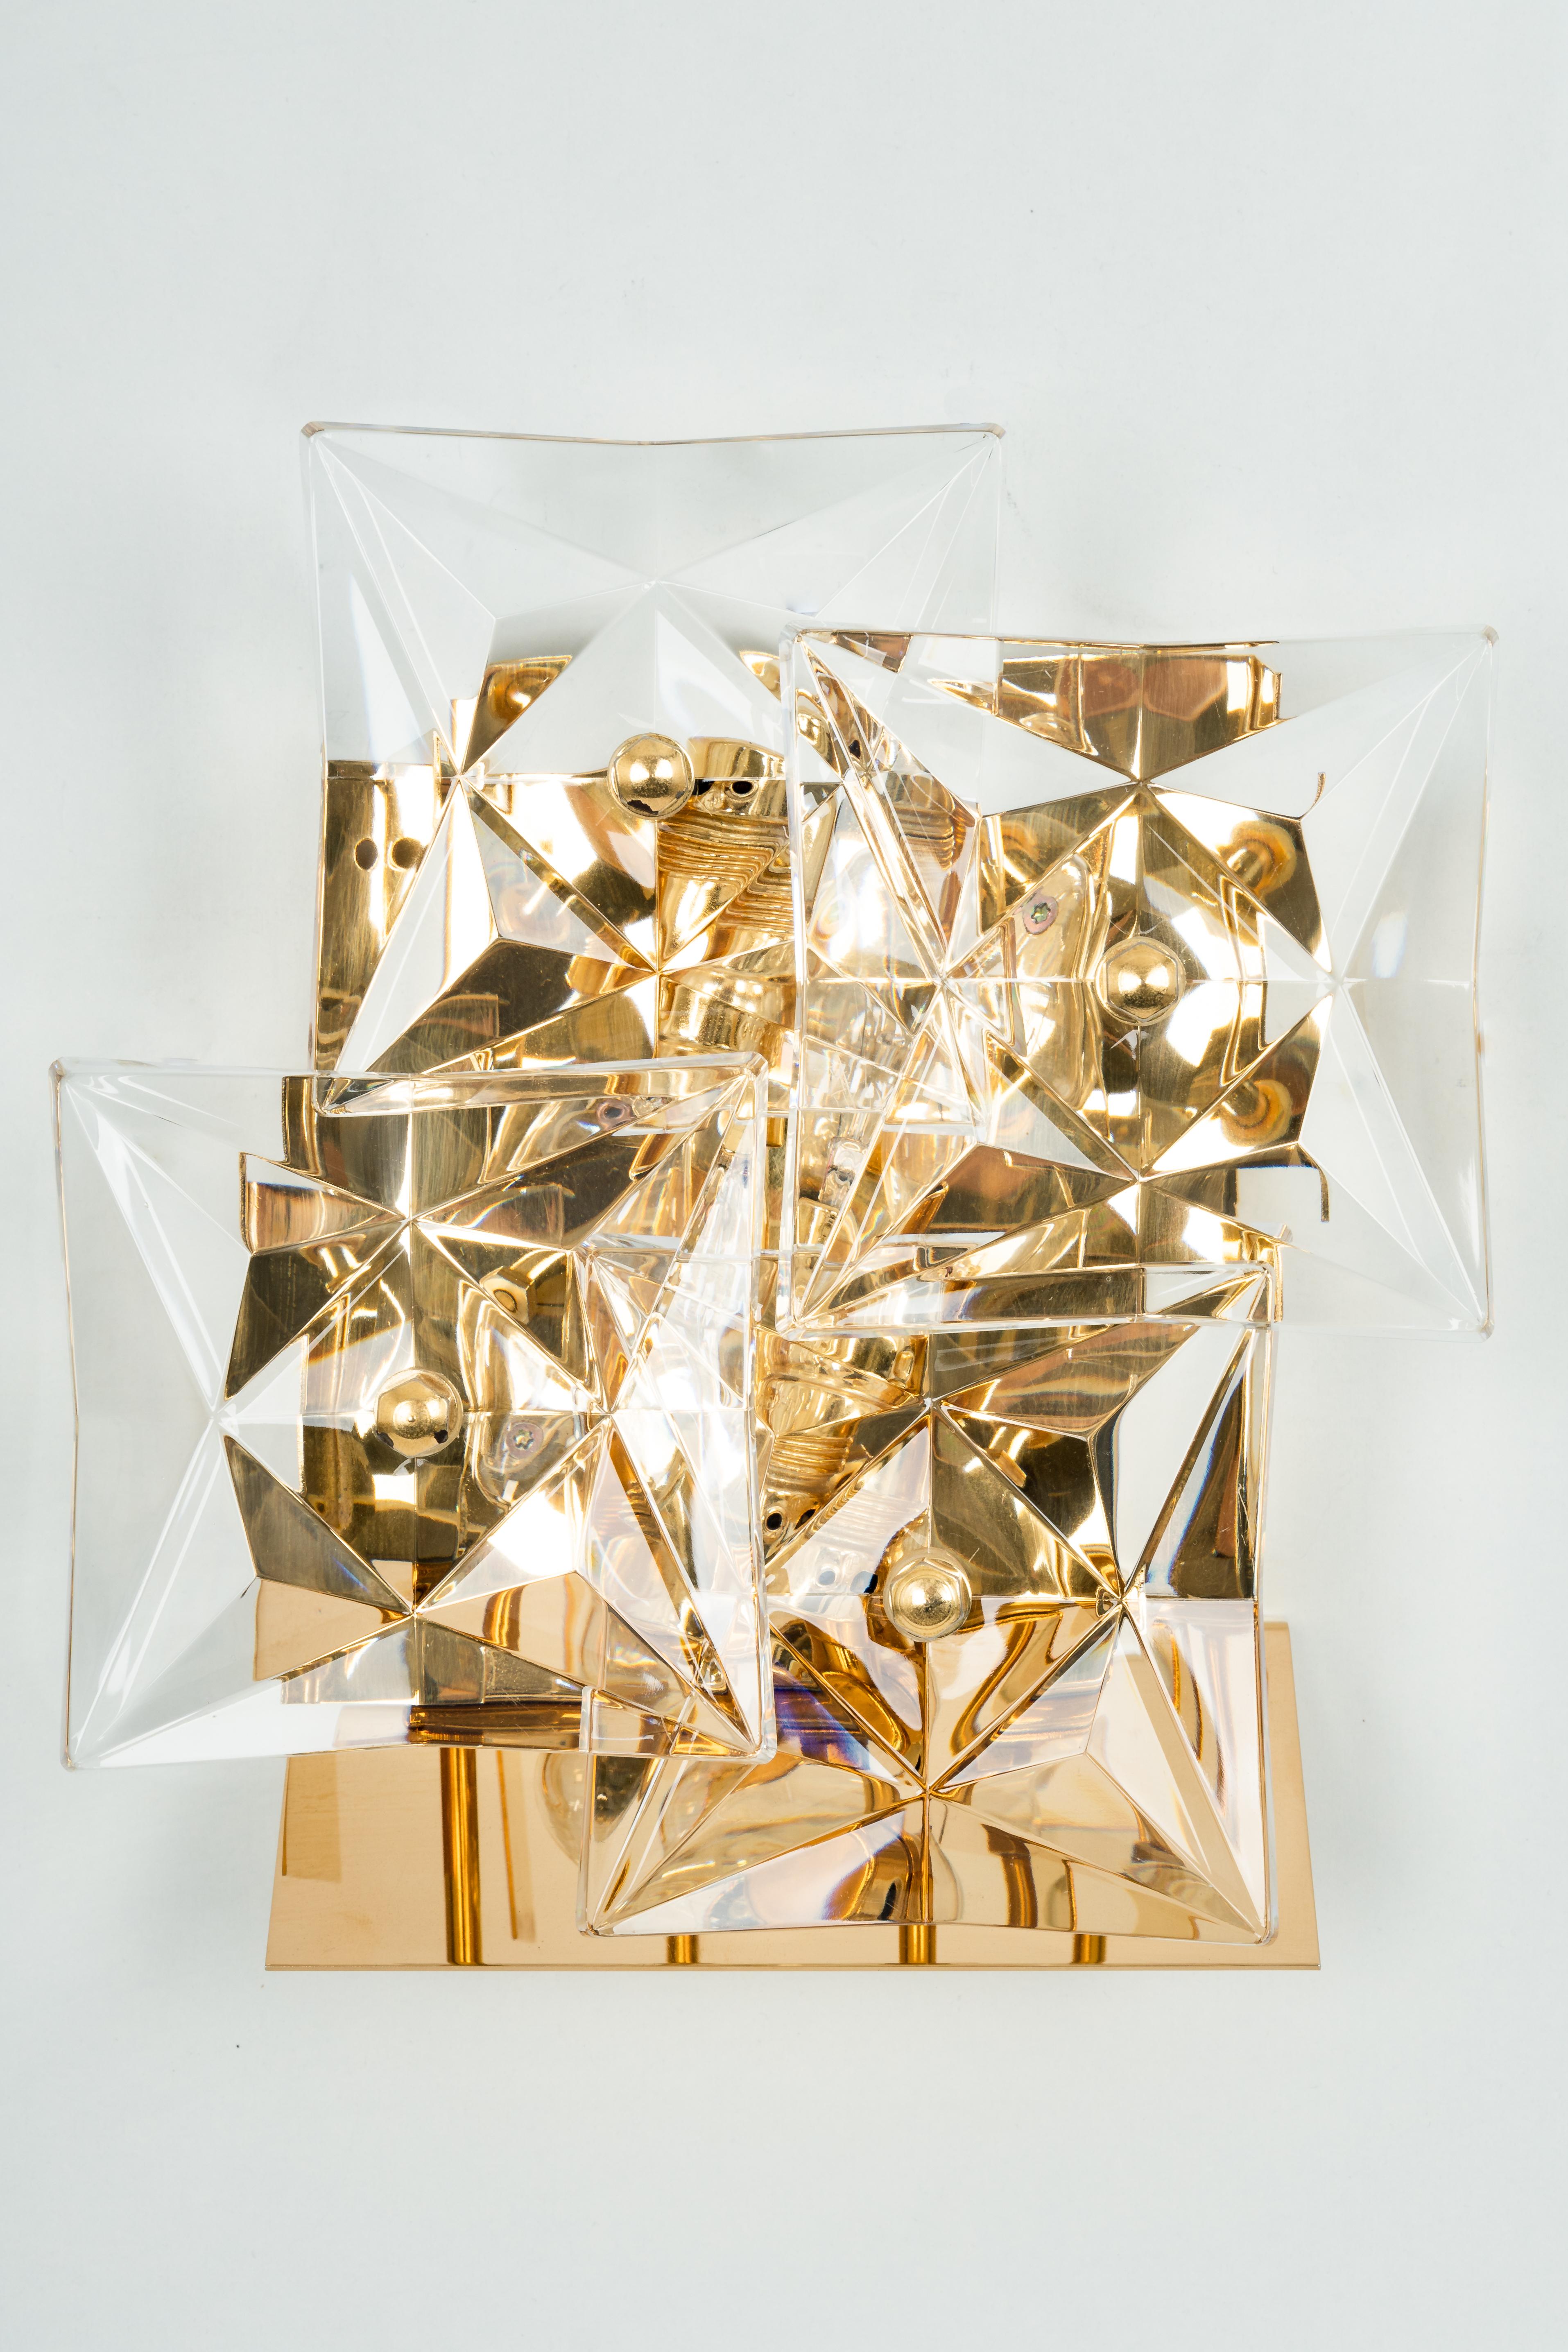 Ein wunderschöner goldener Wandleuchter mit Kristallgläsern, hergestellt von Kinkeldey, Deutschland, ca. 1970-1979. Sie besteht aus Kristallglasstücken auf einem vergoldeten Messingrahmen.
Aus der Serie: Klassiker

Das Beste aus den 1970er Jahren